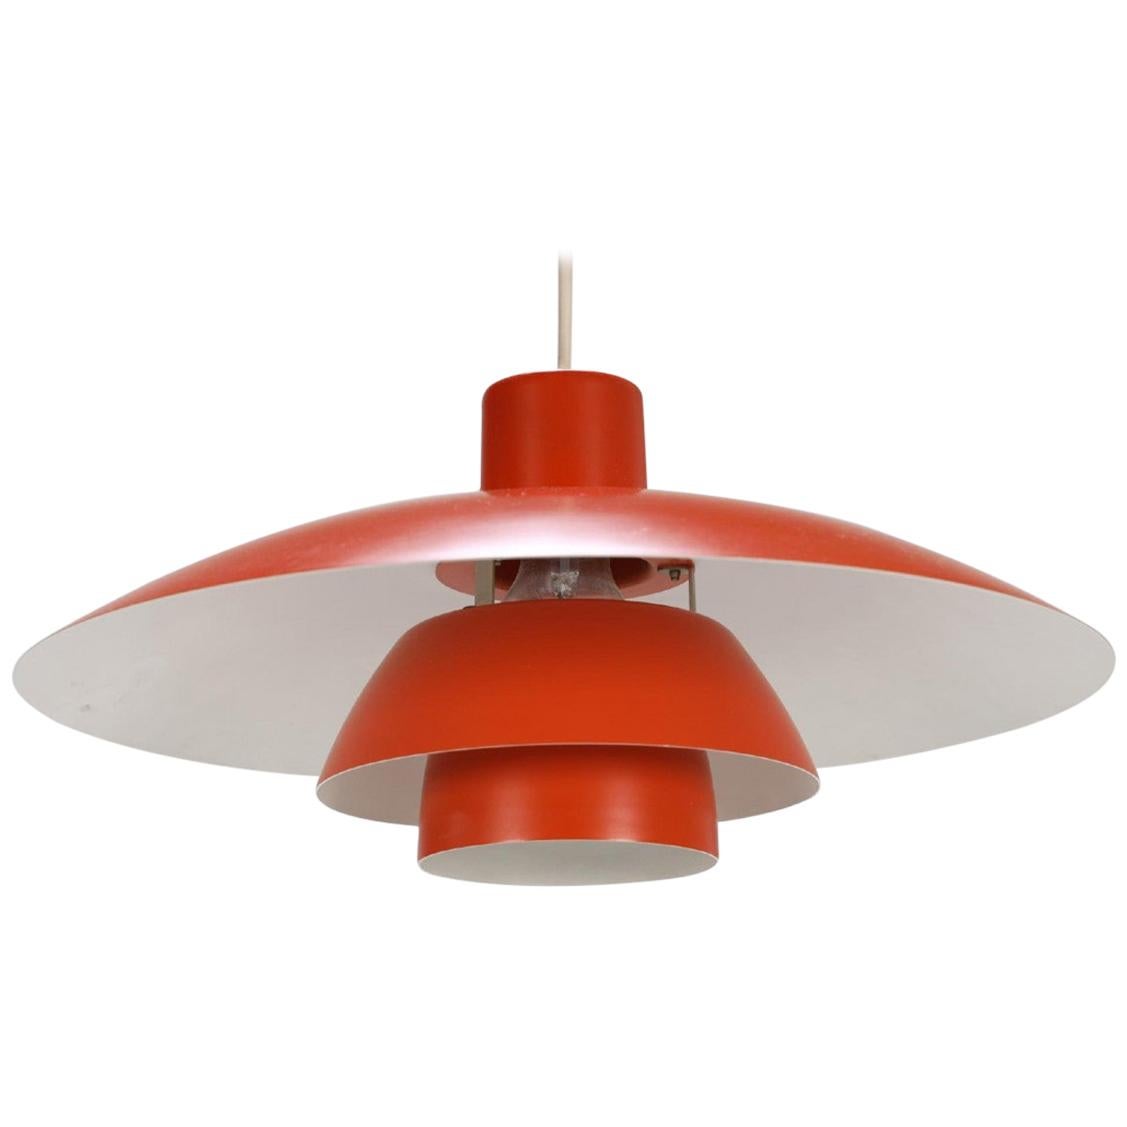 Red Poul Henningsen Lamp, Danish Design